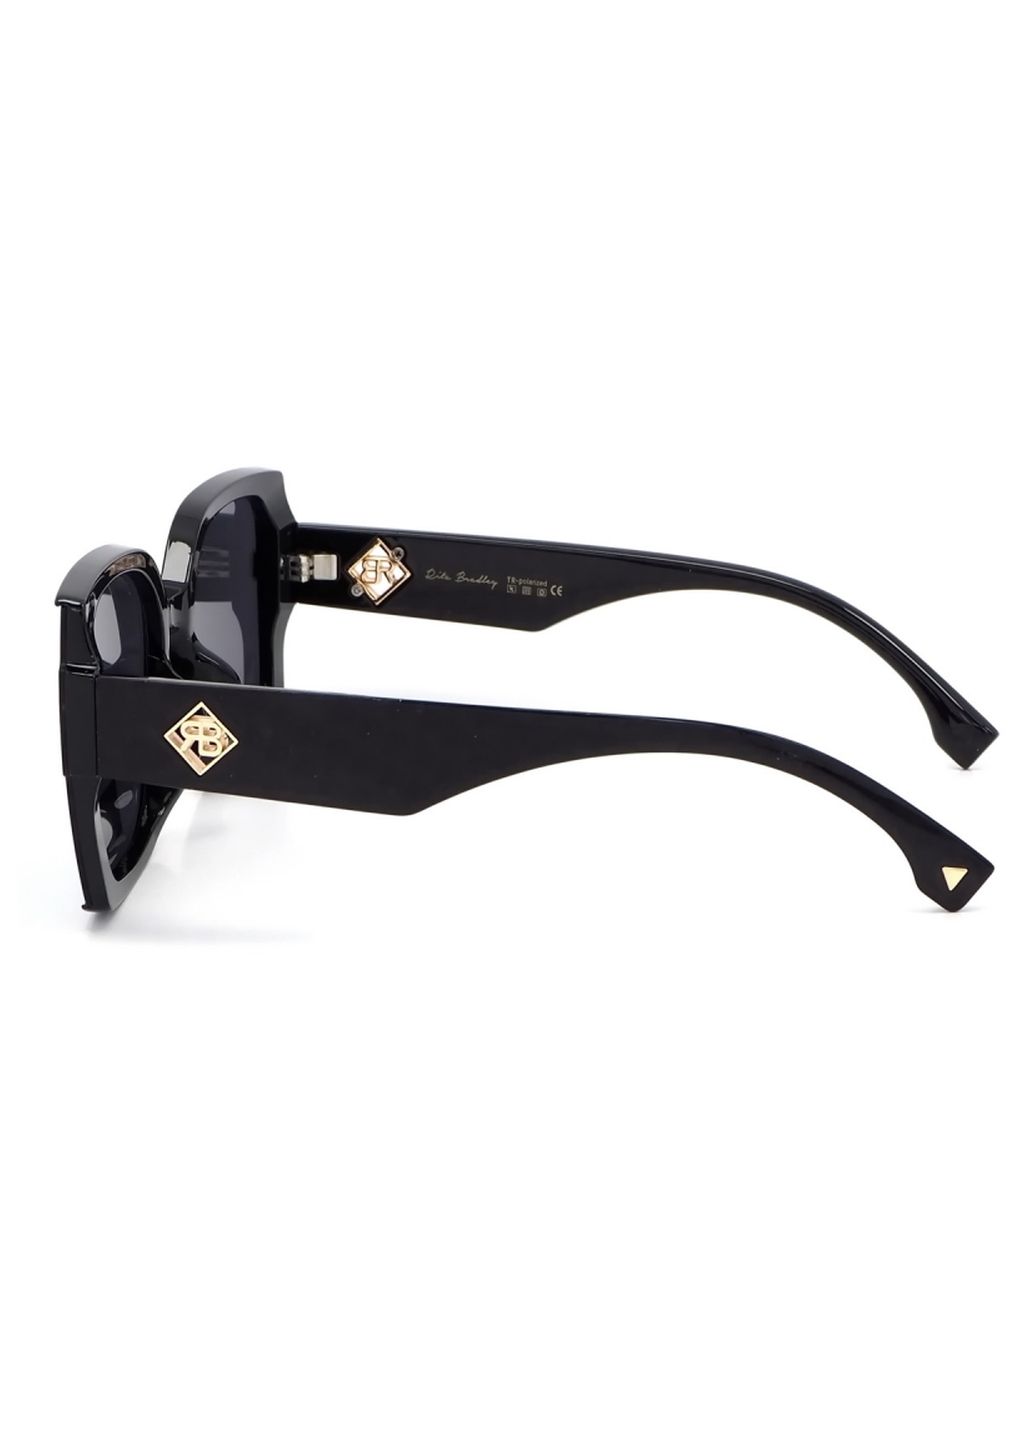 Купить Женские солнцезащитные очки Rita Bradley с поляризацией RB726 112052 в интернет-магазине